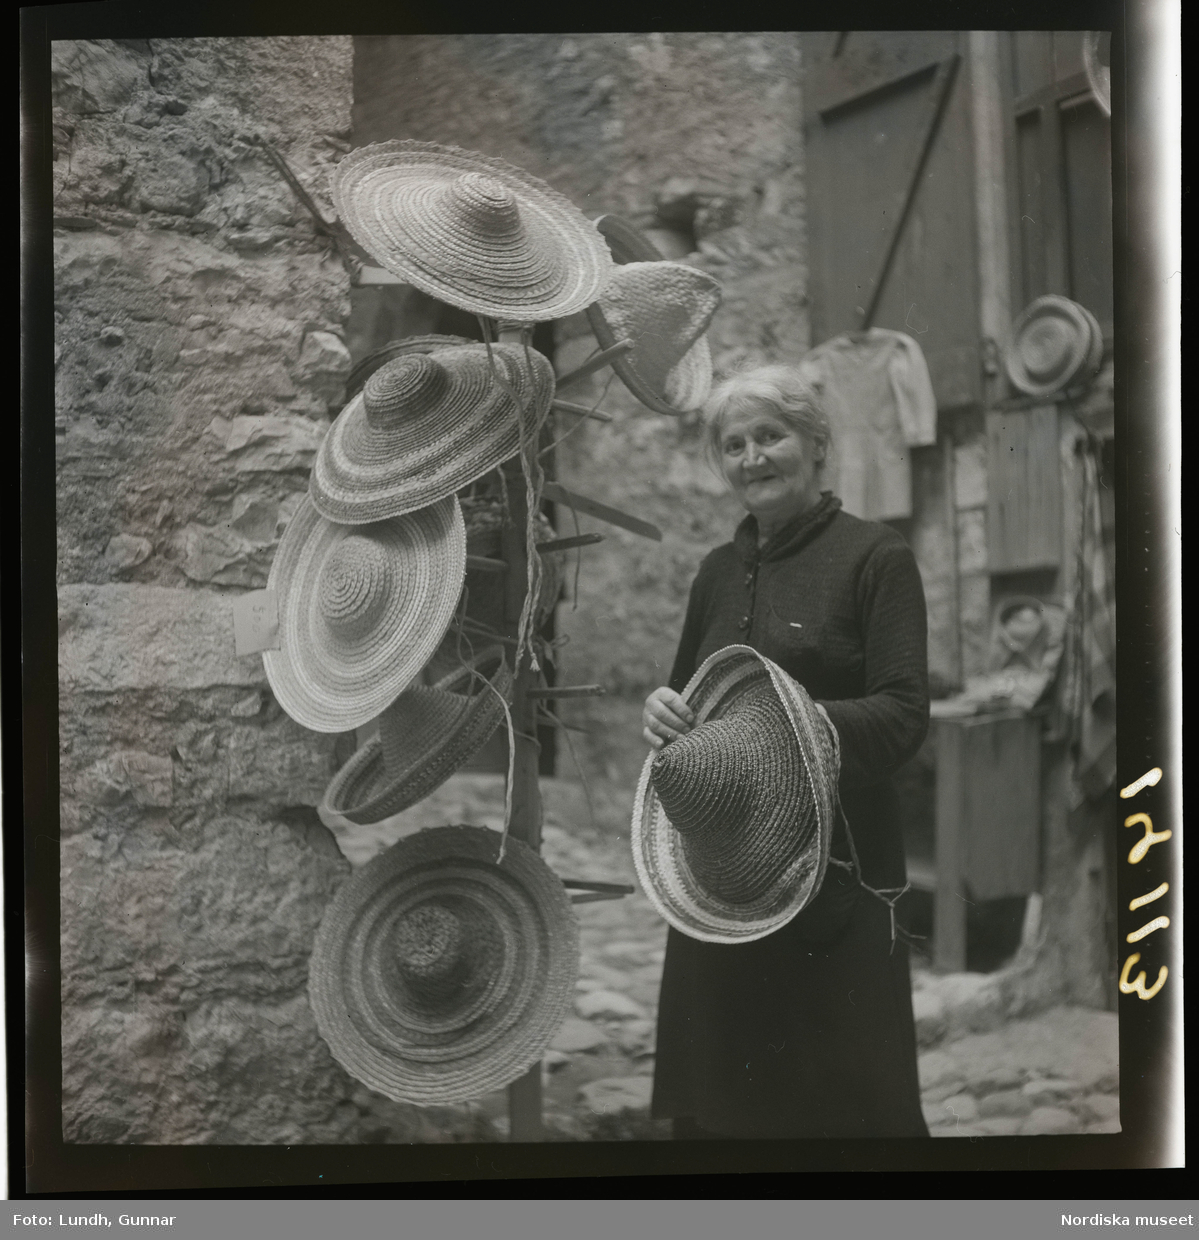 1950. Frankrike. Kvinna med stråhattar